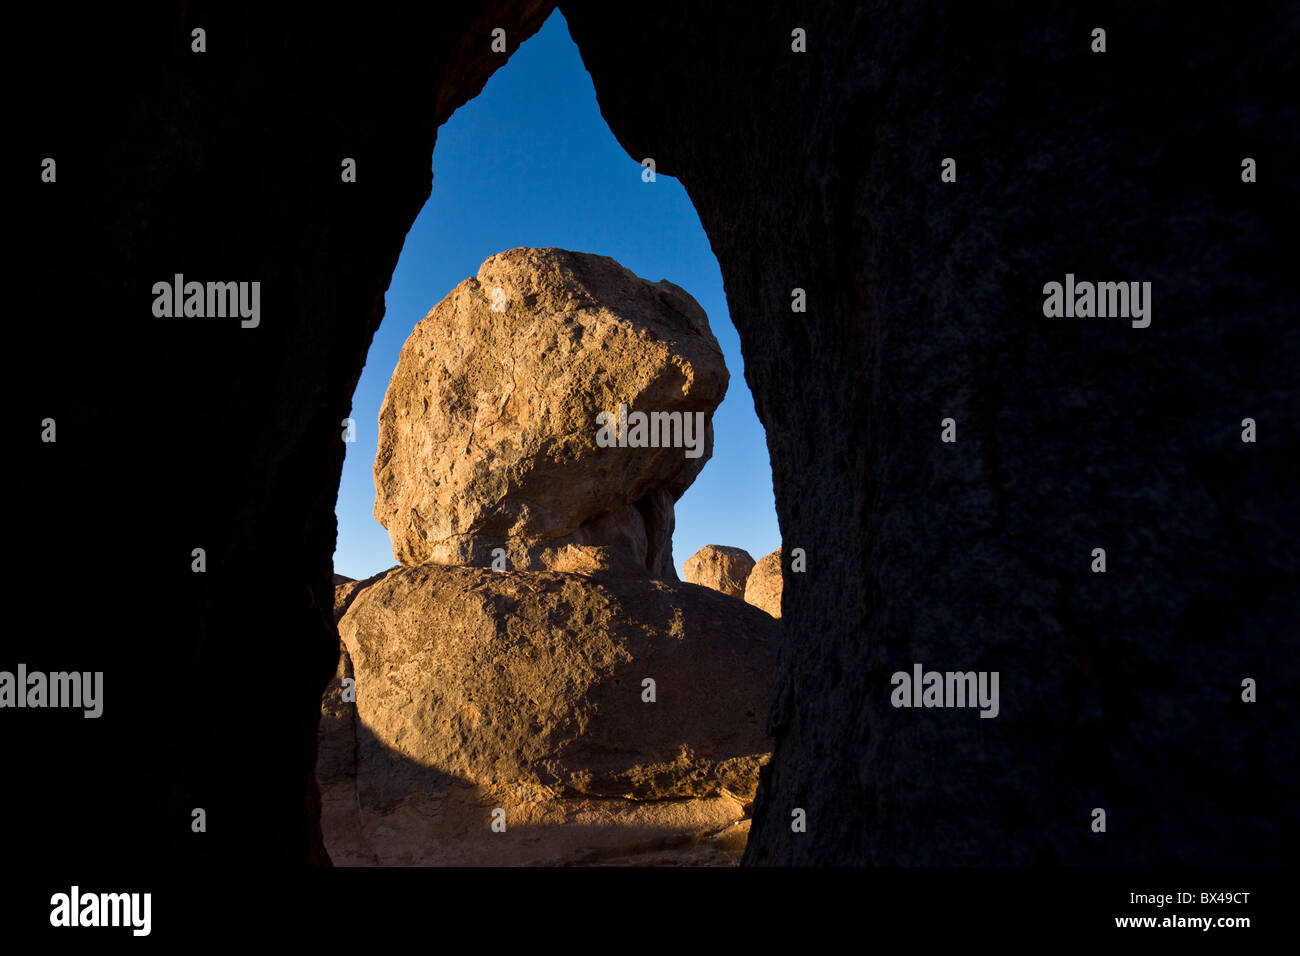 Formata da ceneri vulcaniche 30 milioni di anni fa, uniche formazioni rocciose adesso dominano la città di roccia del parco statale nel Nuovo Messico, Stati Uniti d'America. Foto Stock